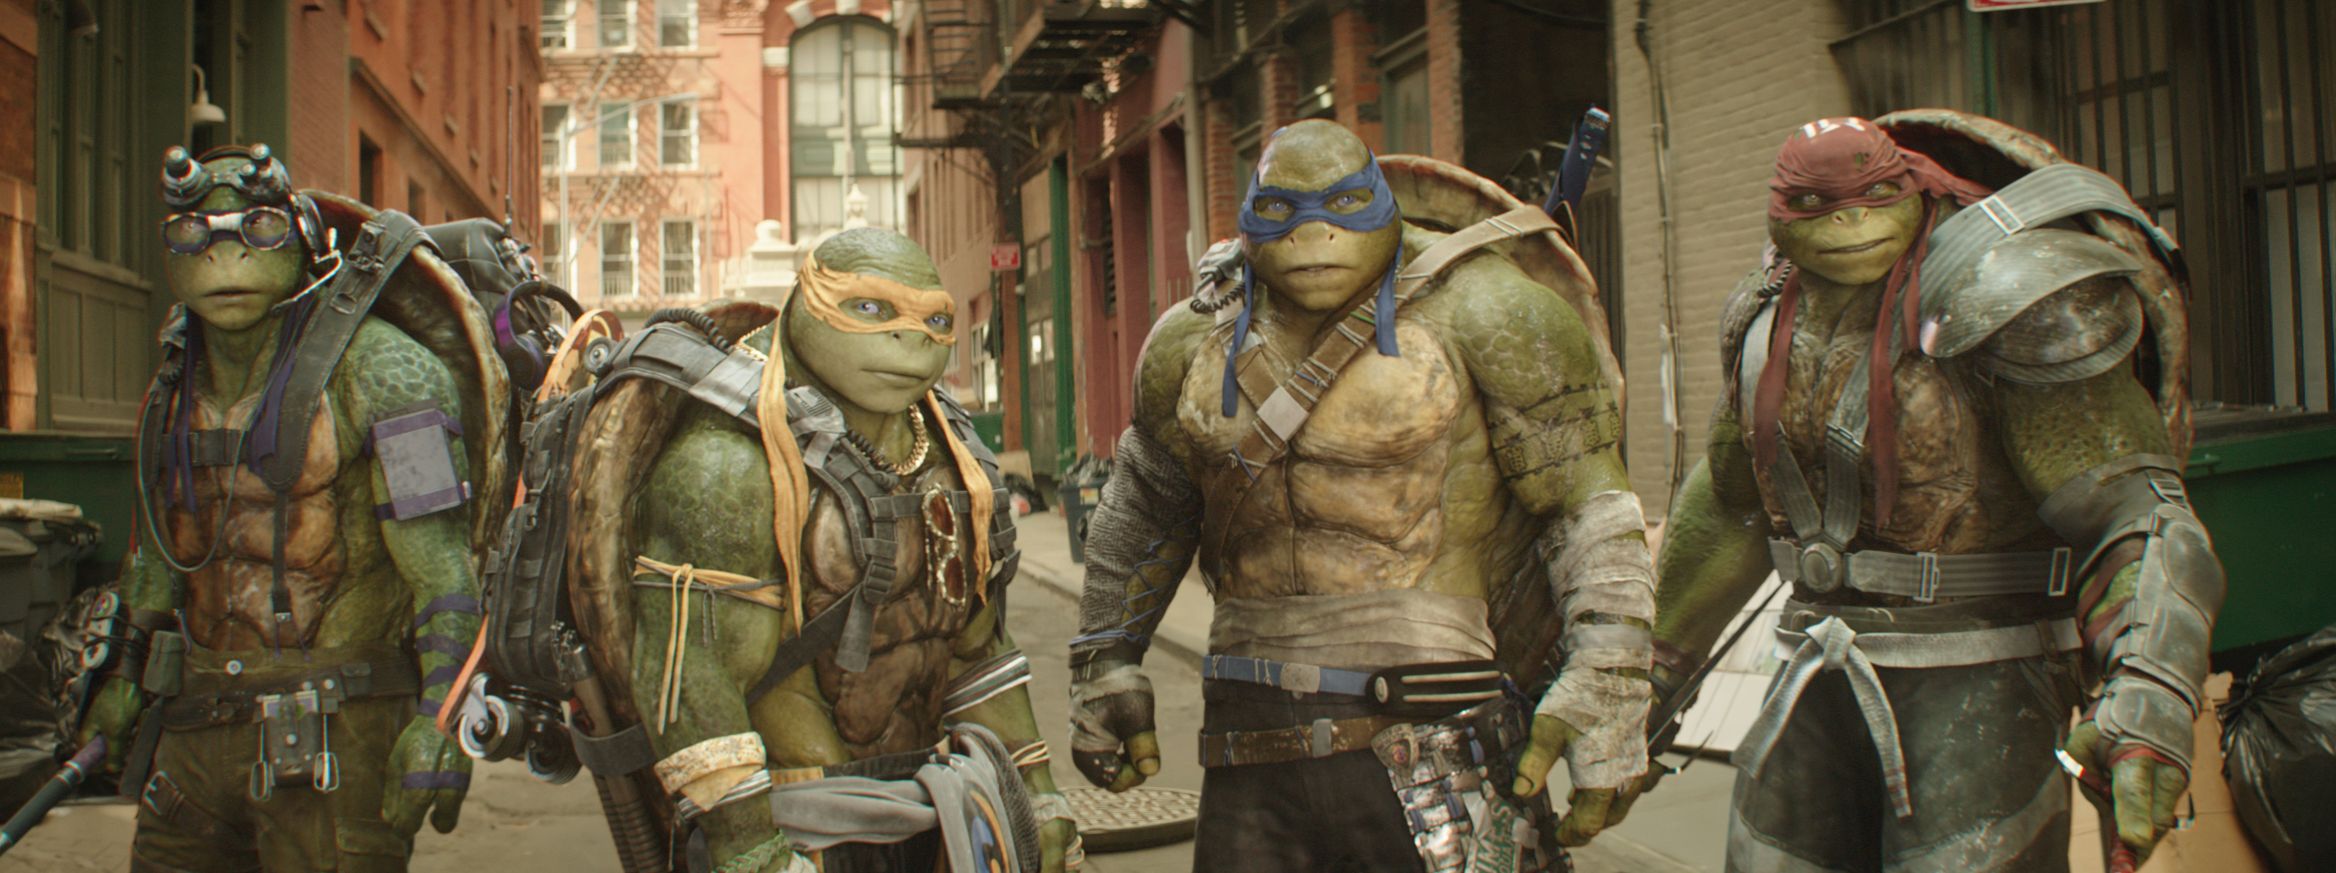 tmnt2027 Teenage Mutant Ninja Turtles 2 Trailer Screenshots